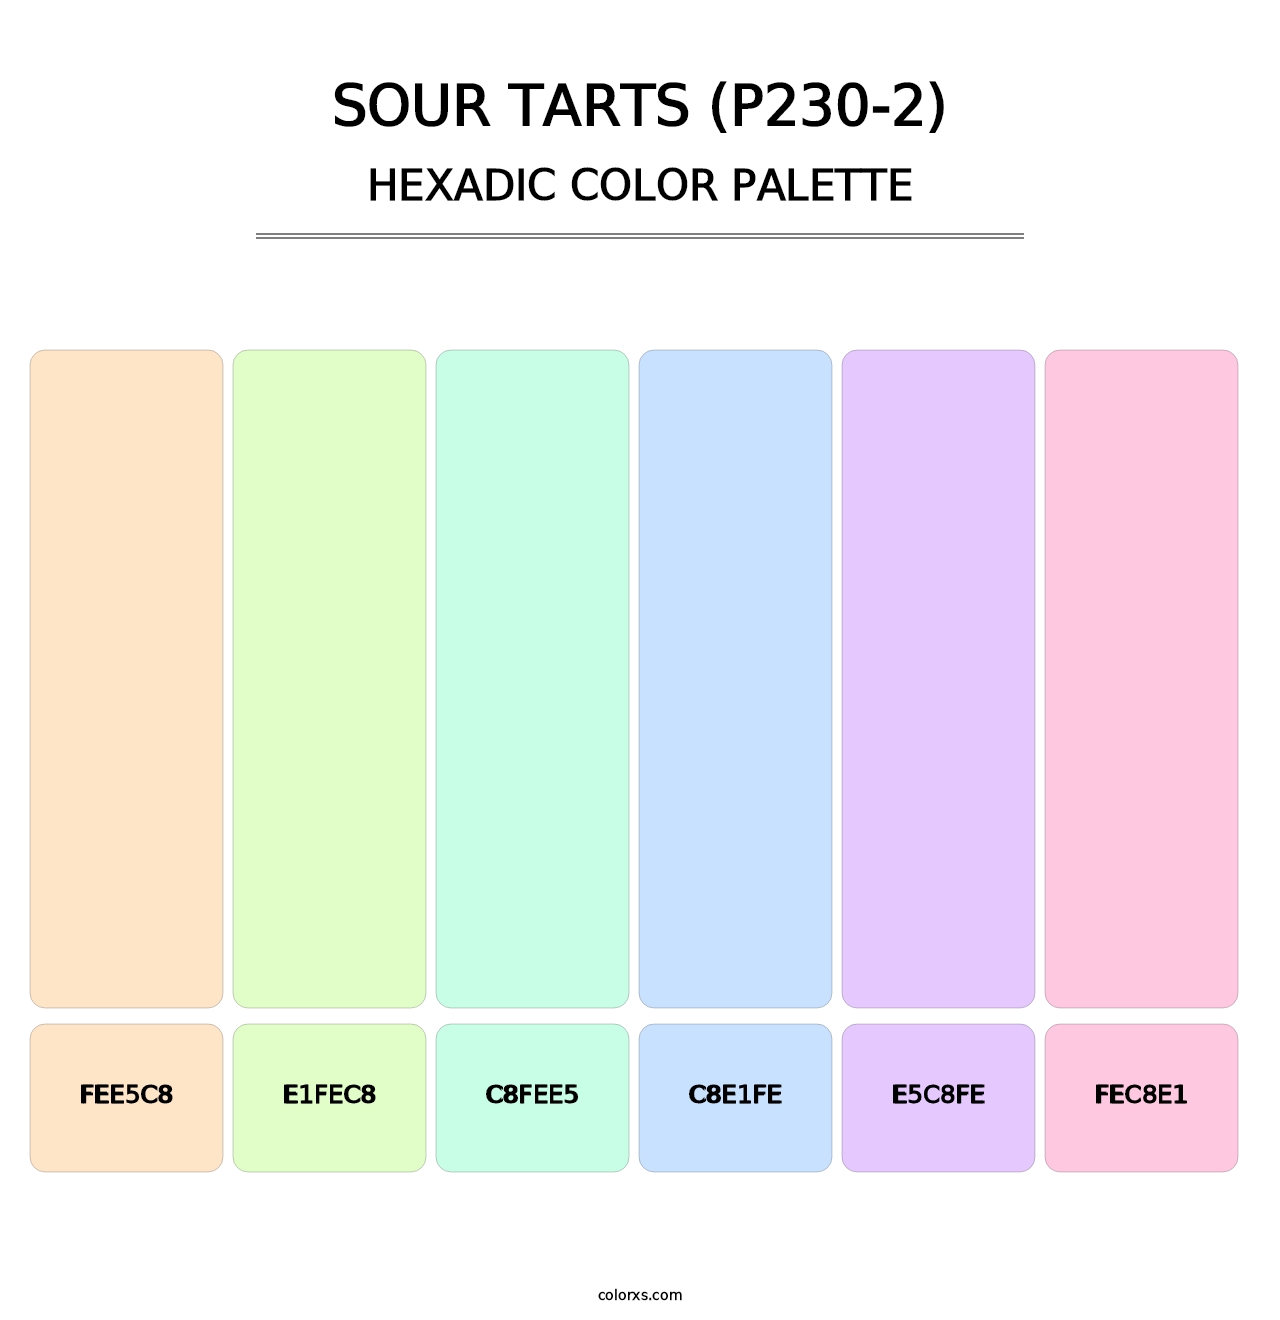 Sour Tarts (P230-2) - Hexadic Color Palette